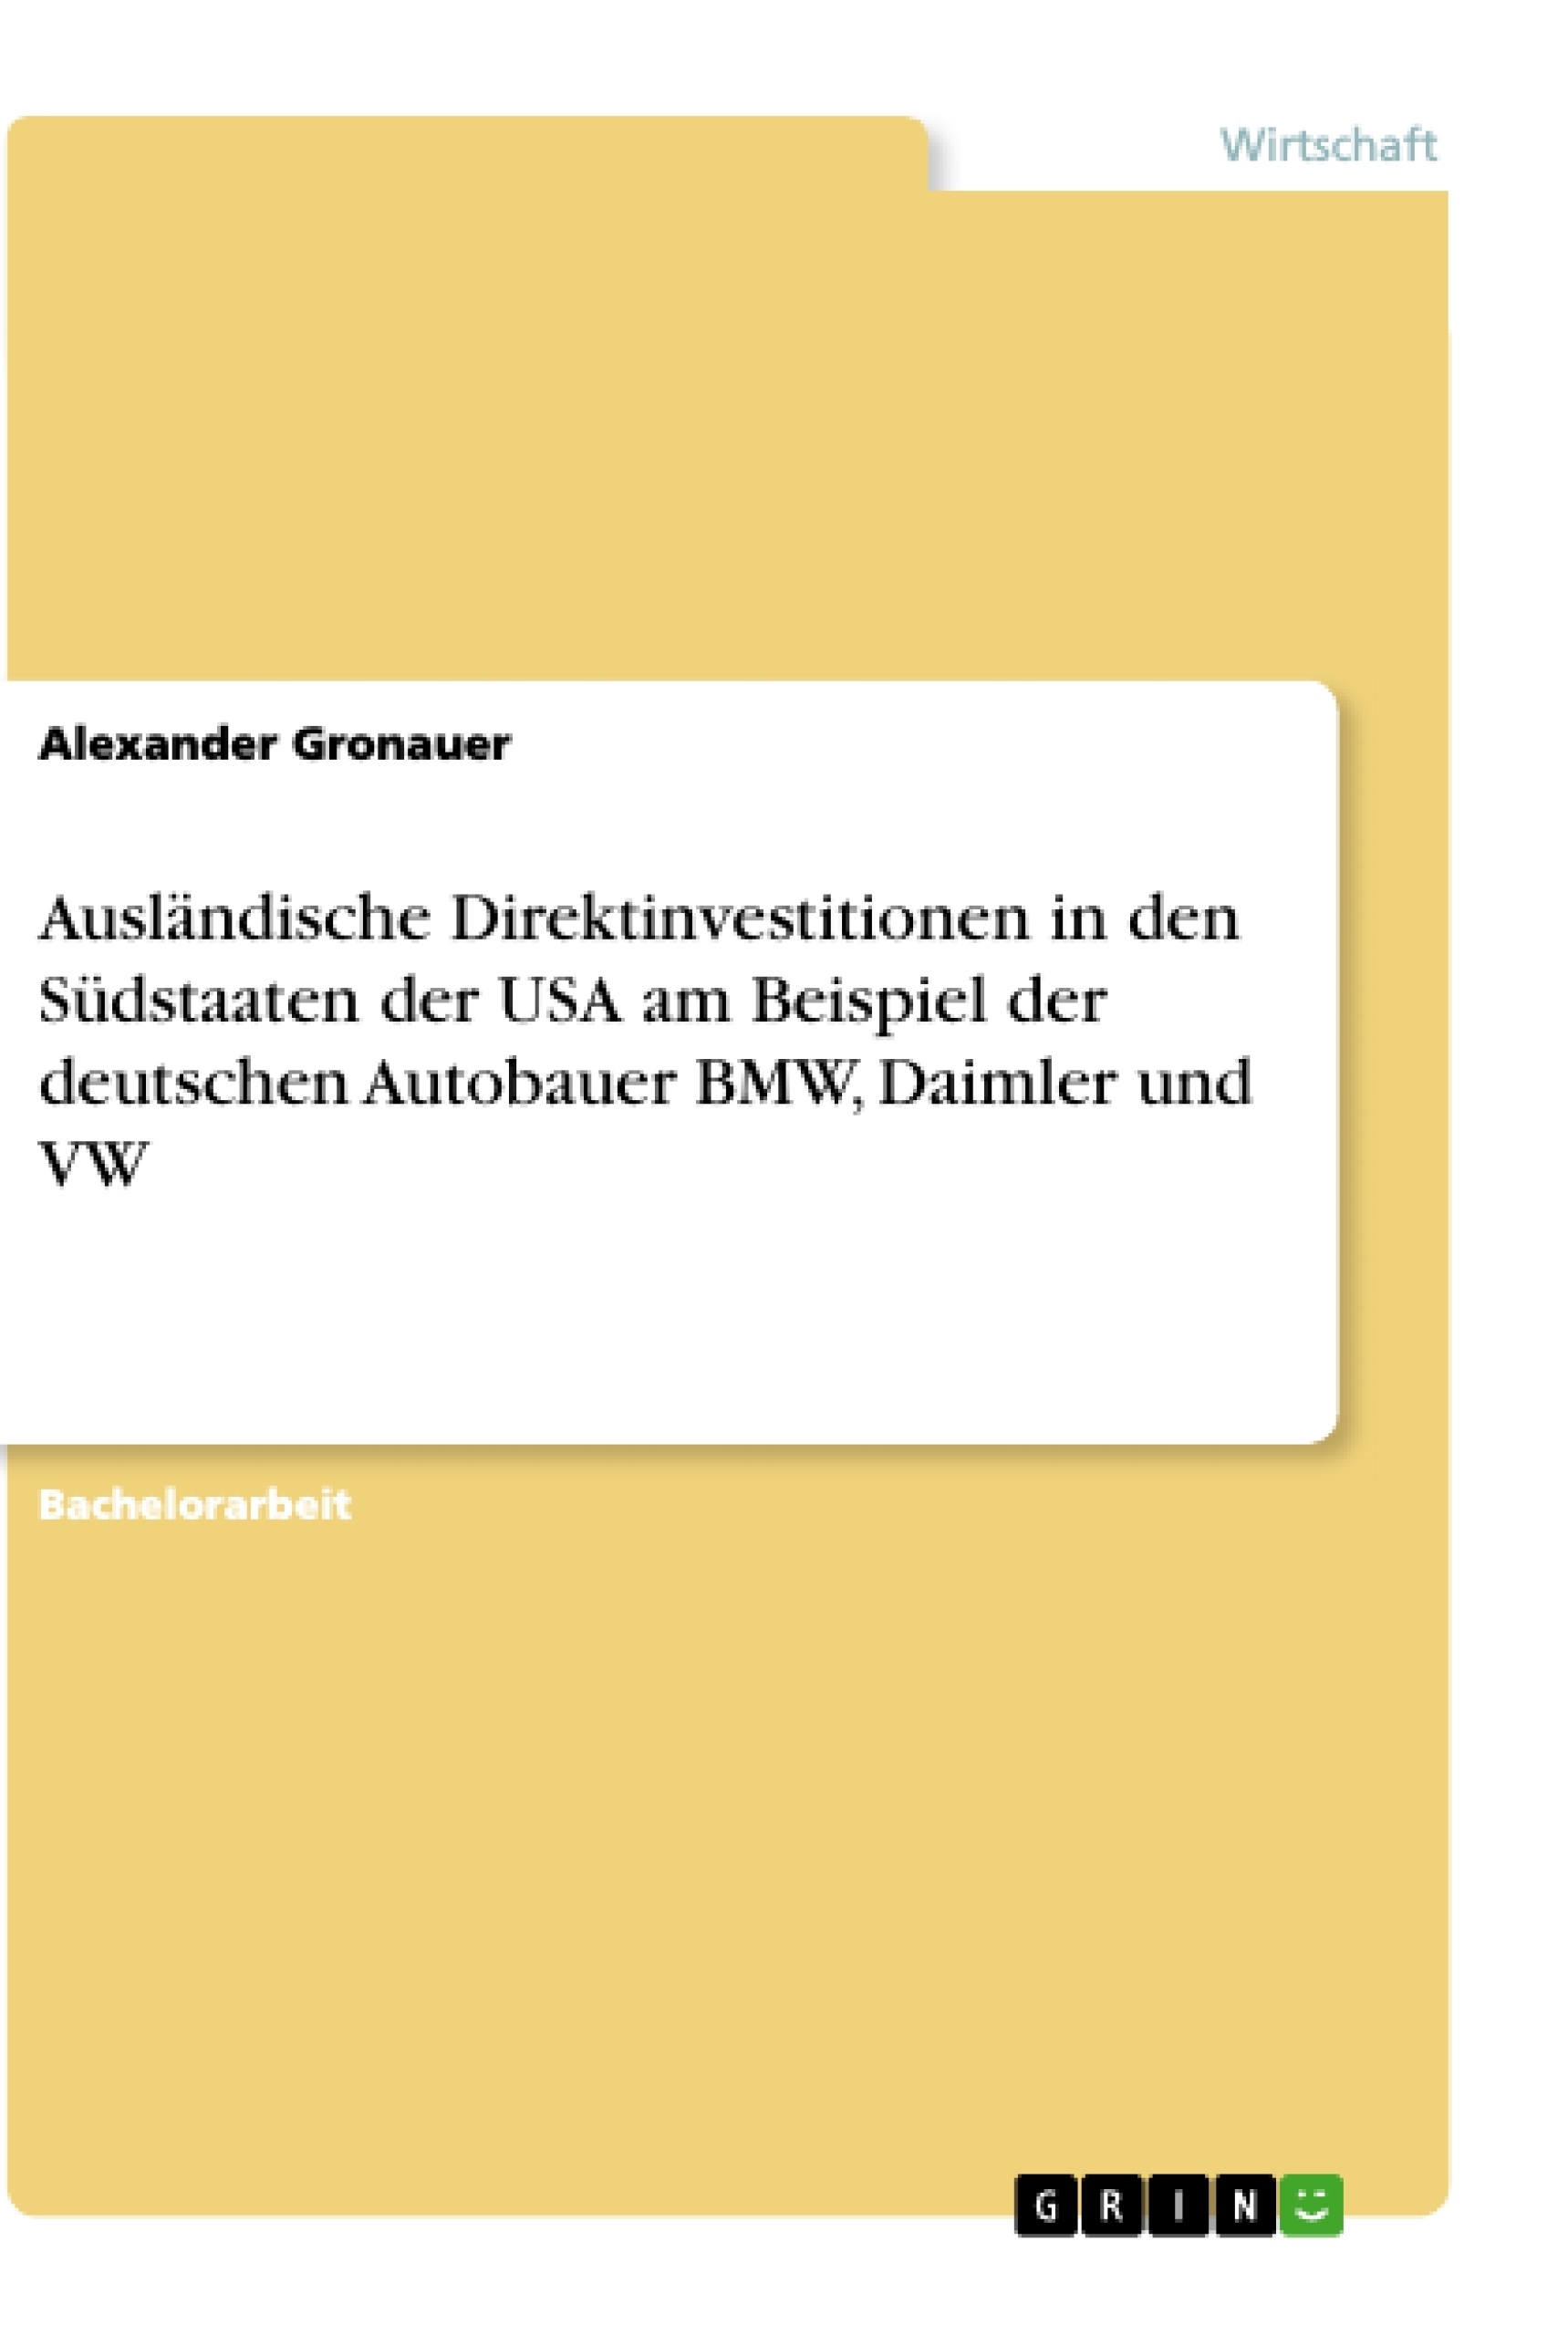 Titel: Ausländische Direktinvestitionen in den Südstaaten der USA am Beispiel der deutschen Autobauer BMW, Daimler und VW